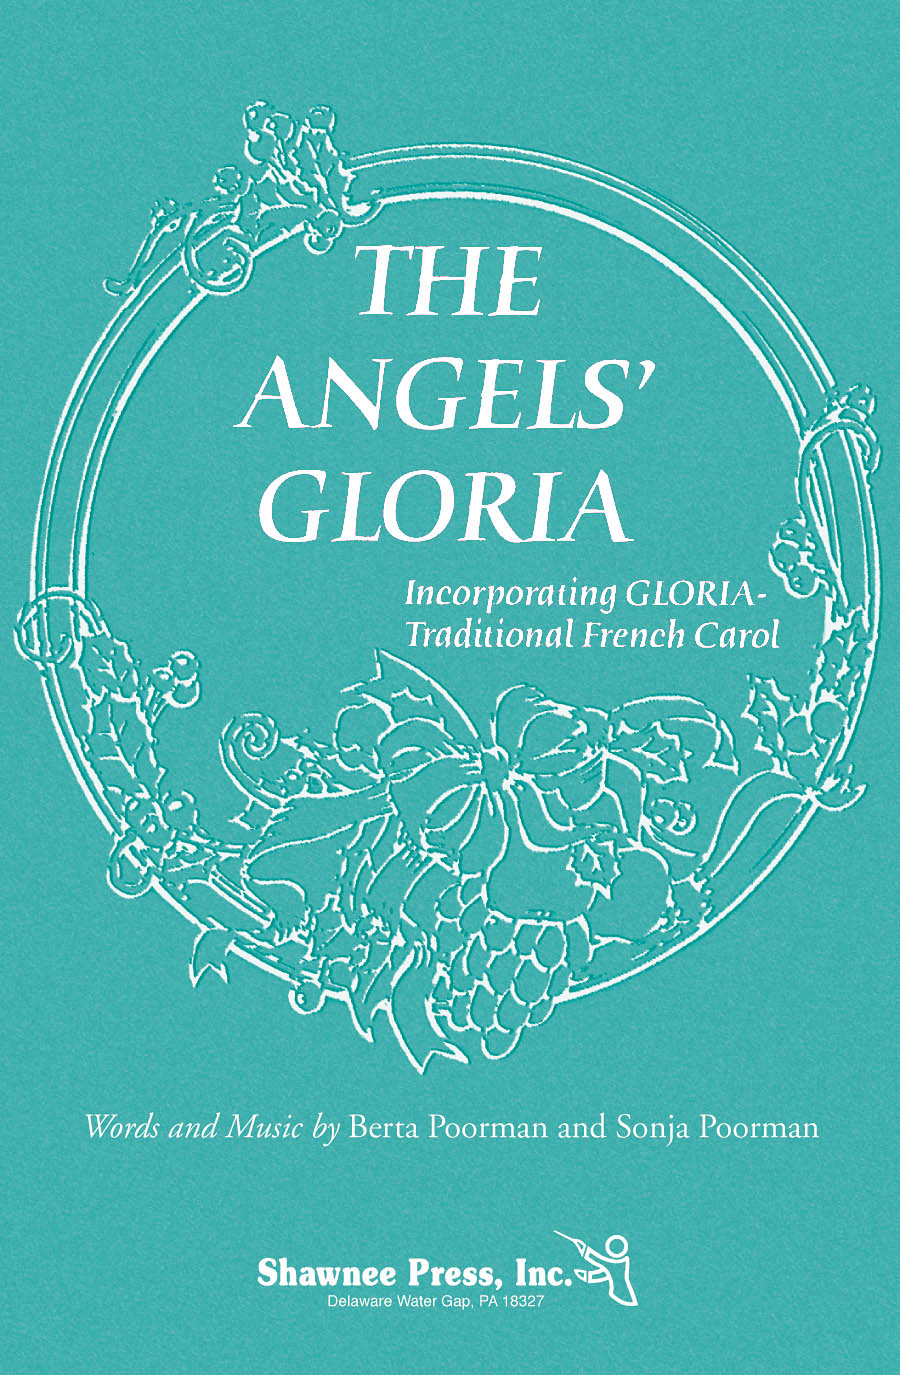 The Angels' Gloria